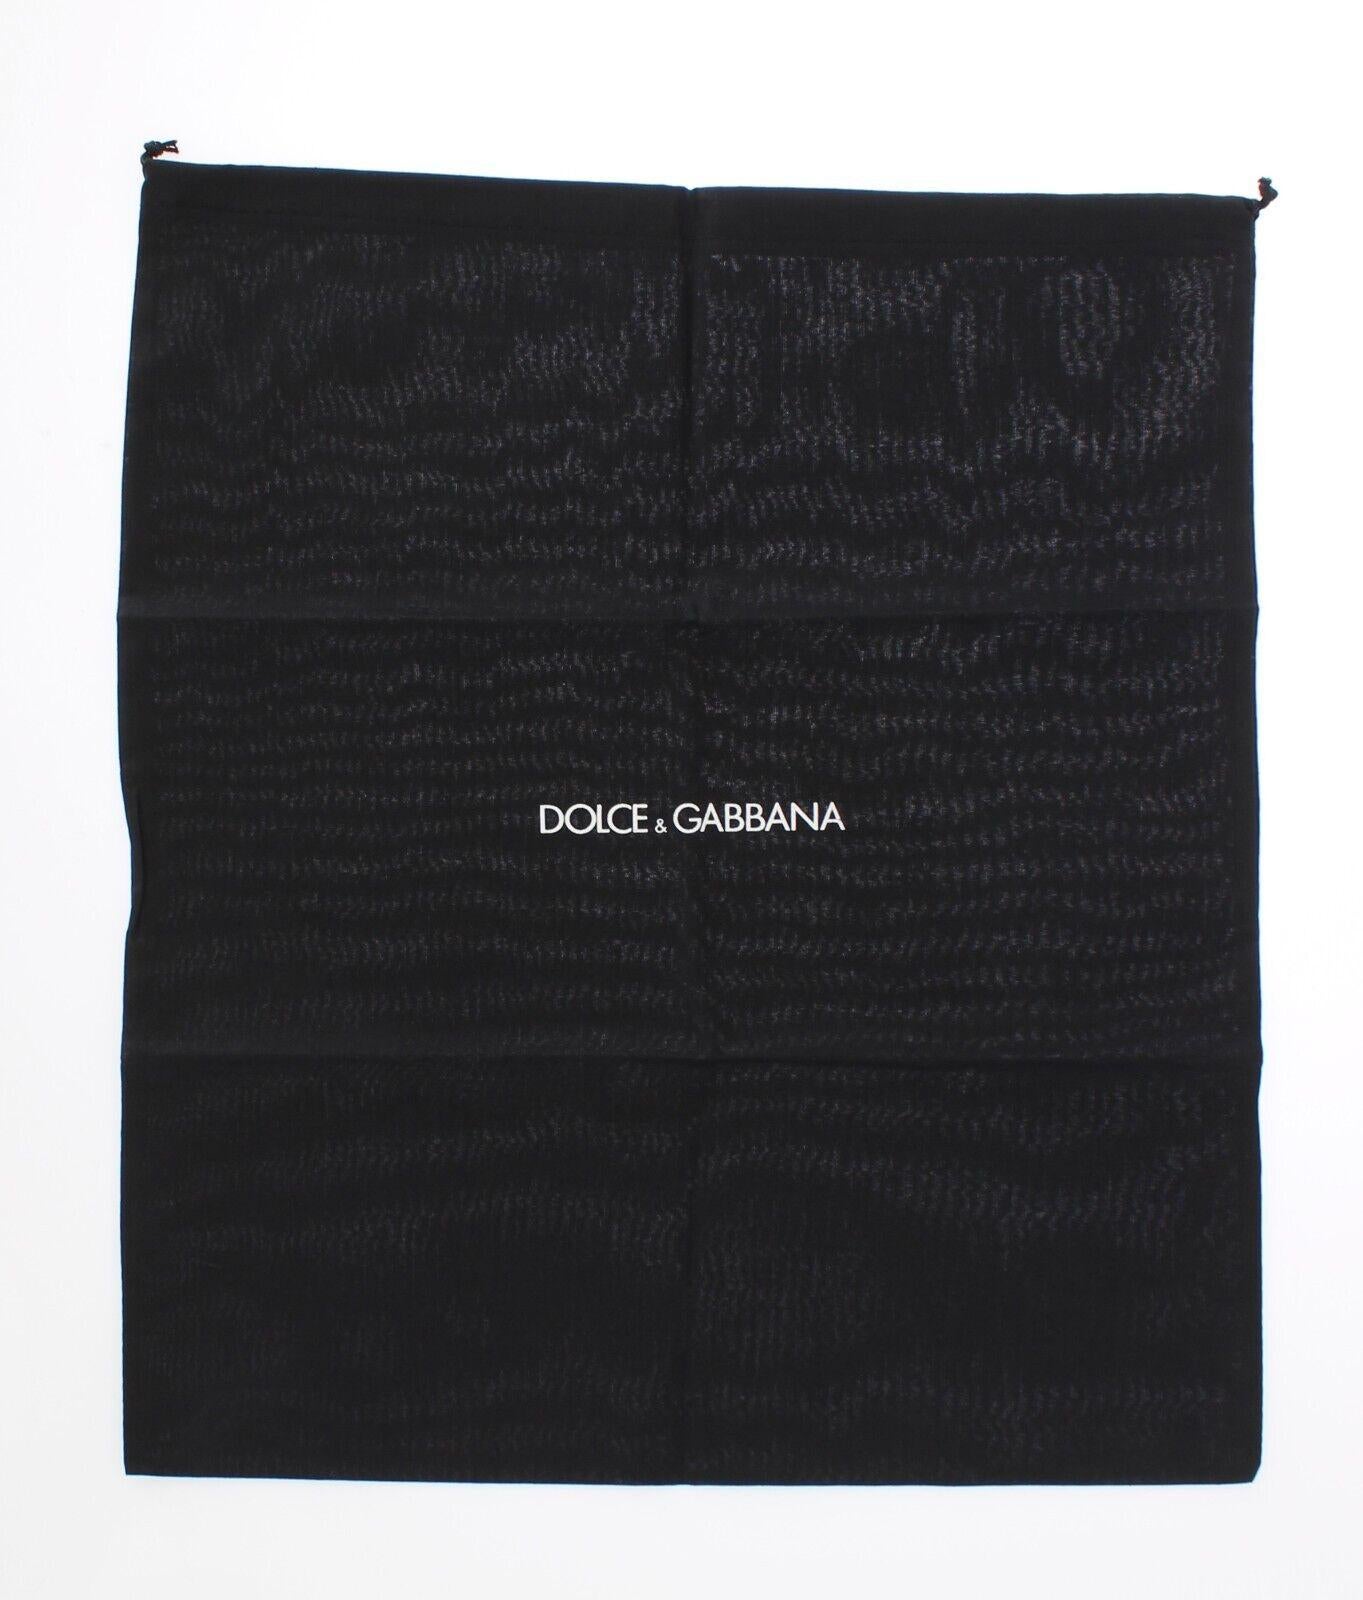 Dolce & Gabbana Black Leather Wallet Cardholder Men Purse with DG Logo For Sale 3